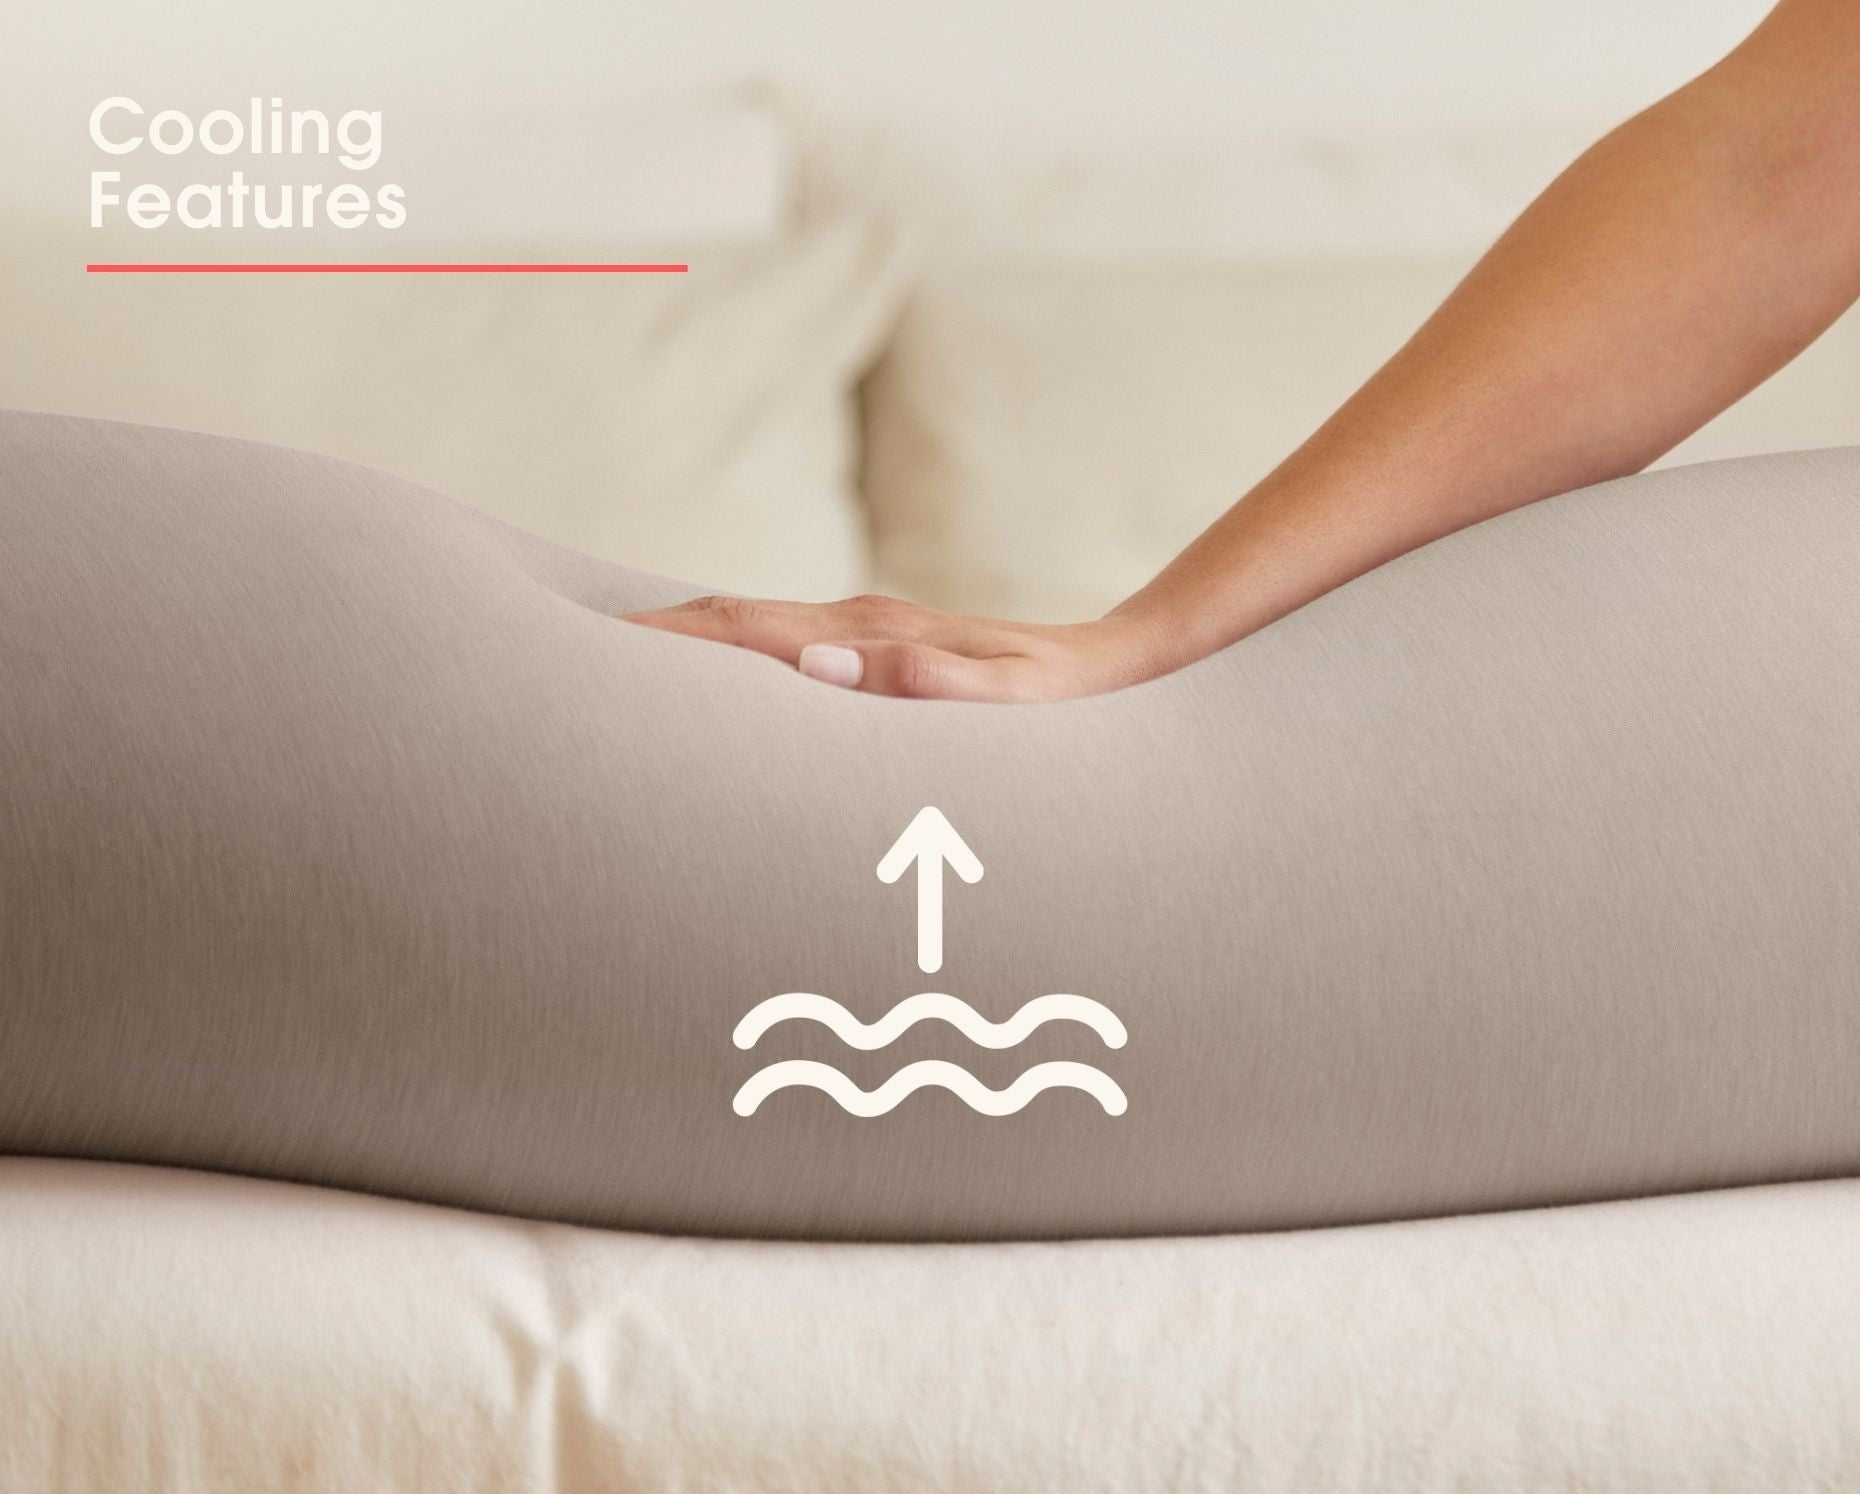 bbhugme Pregnancy Pillow